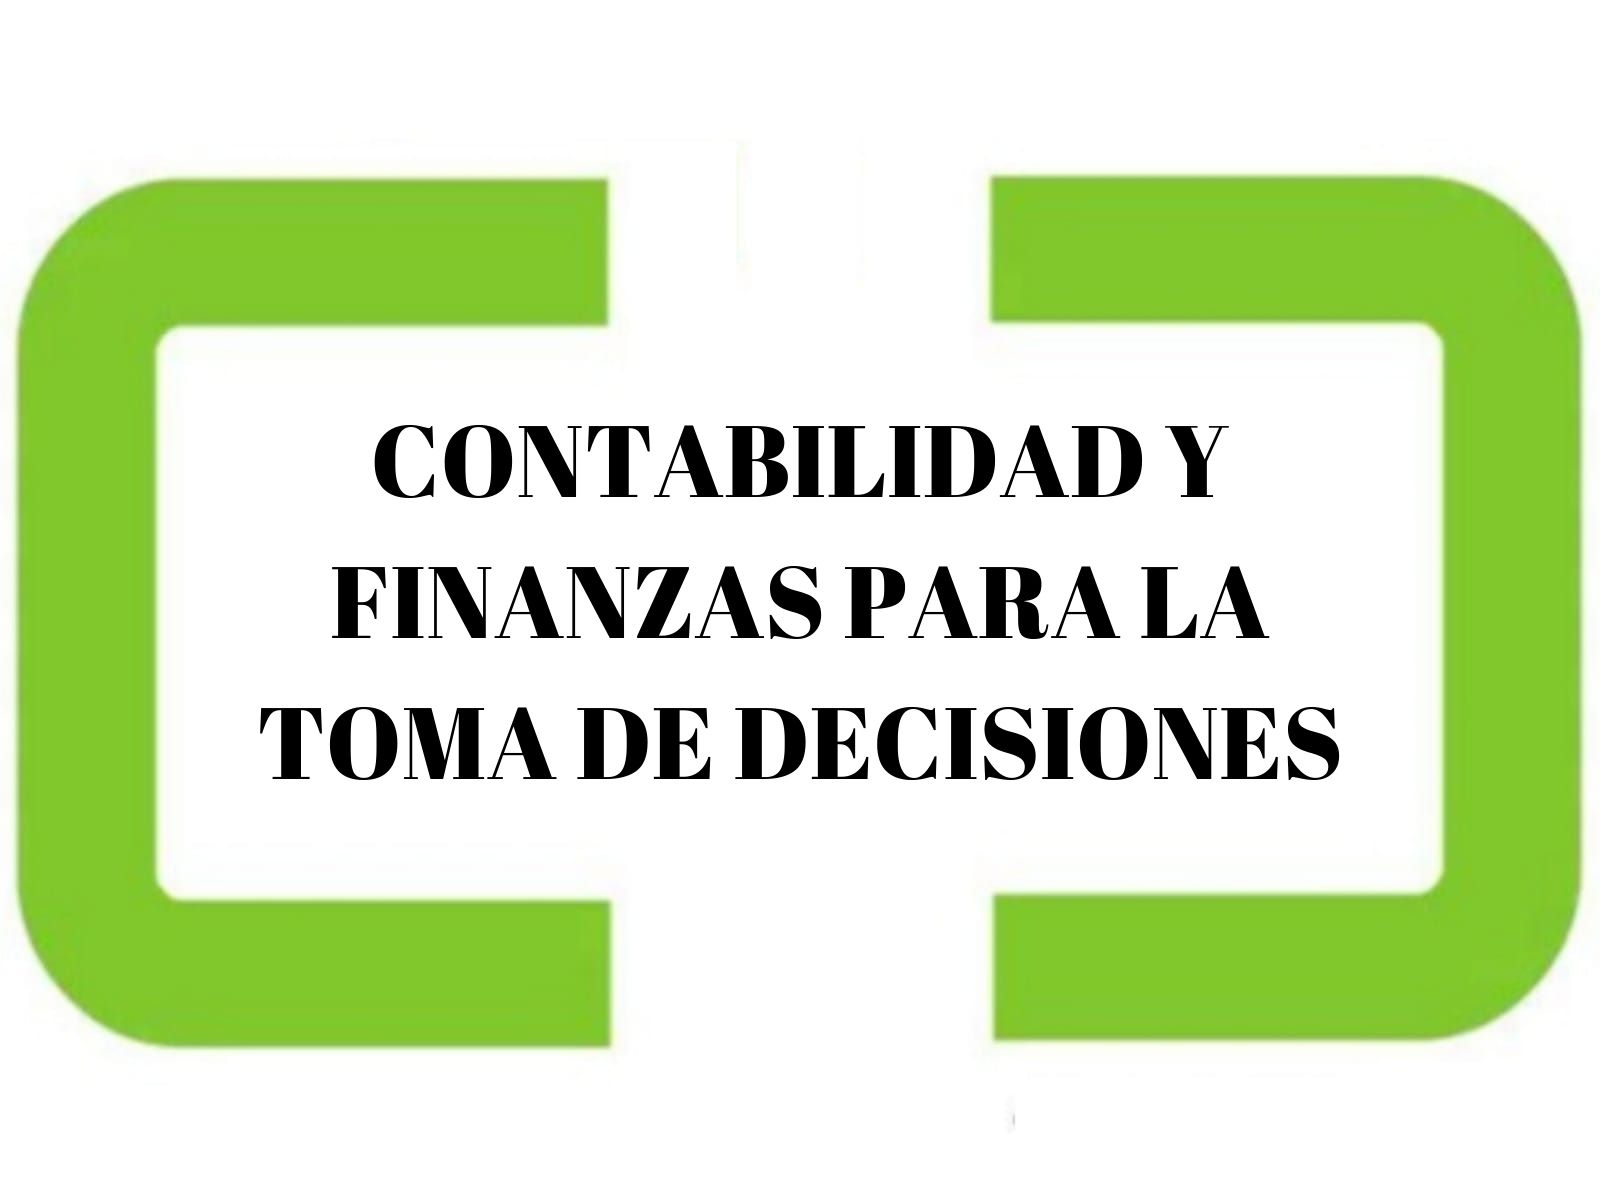 CONTABILIDAD Y FINANZAS PARA LA TOMA DE DECISIONES